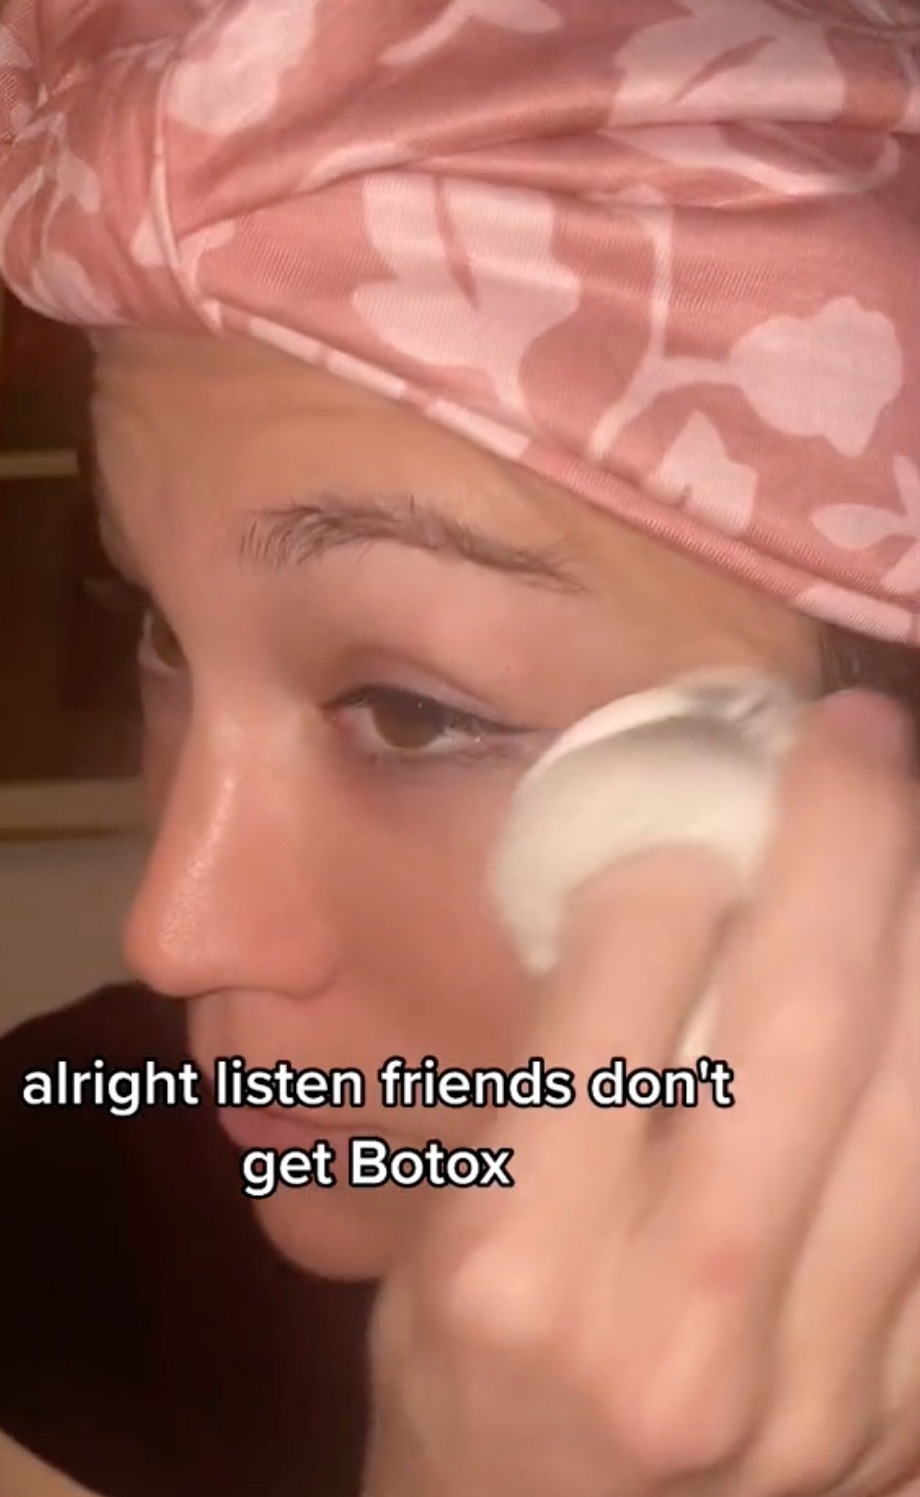 Sie sagte, sie solle kein Botox bekommen und stattdessen ihr Wunsch-Must-Have kaufen